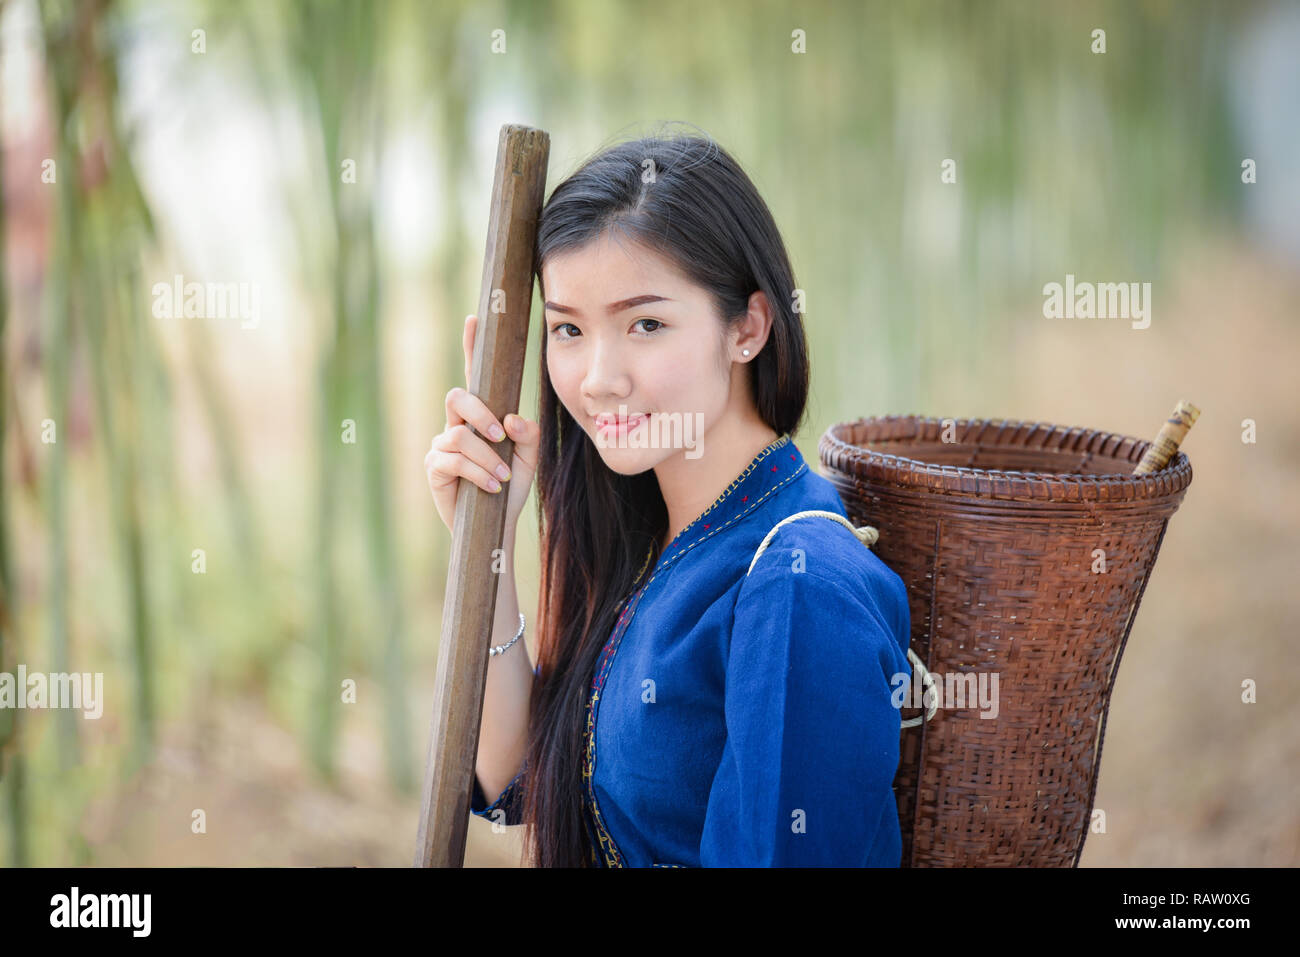 Frauen Asien Landwirt In Bambus Wald Natur Portrat Der Schone Junge Asiatische Frau Gluck Lacheln Mit Korb Fur Die Ernte Landwirtschaft In Der Landschaft Stockfotografie Alamy